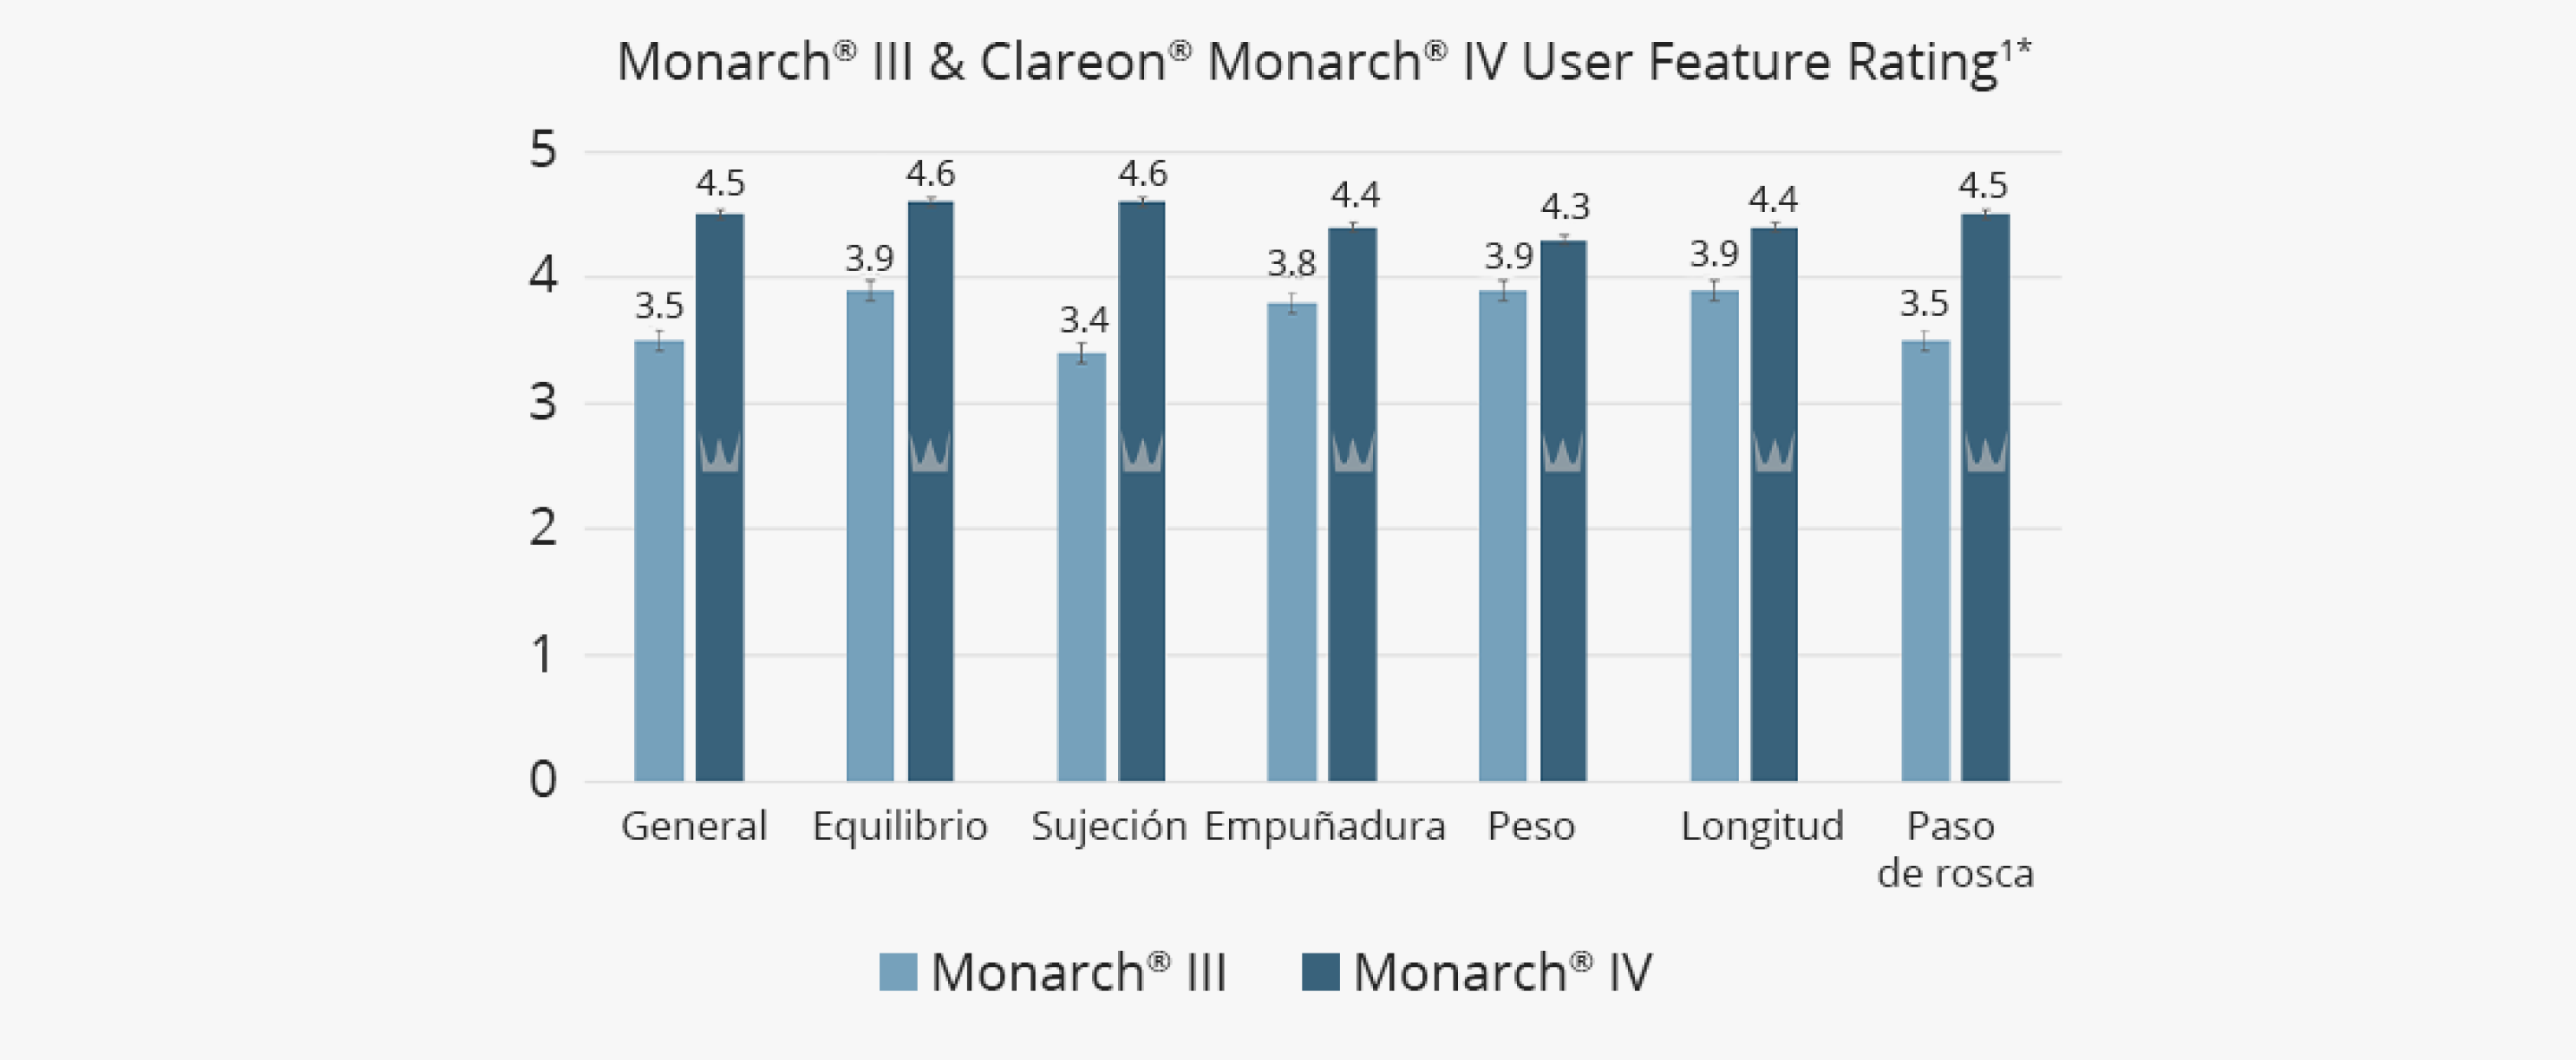 Gráfico de barras que ilustra la comparación entre la puntuación de los usuarios de las diferentes características de los sistemas inyectores Clareon Monarch IV y Monarch III. El gráfico realiza 7 comparaciones entre los dos dispositivos: paso de rosca, longitud, peso, botón, agarre, equilibrio y puntuación general. Clareon Monarch IV tiene una puntuación de las características más alta que Monarch III en las 7 comparaciones. Clareon Monarch IV tiene una puntuación general de 4,5 comparada con la puntuación general de Monarch III de 3,5.